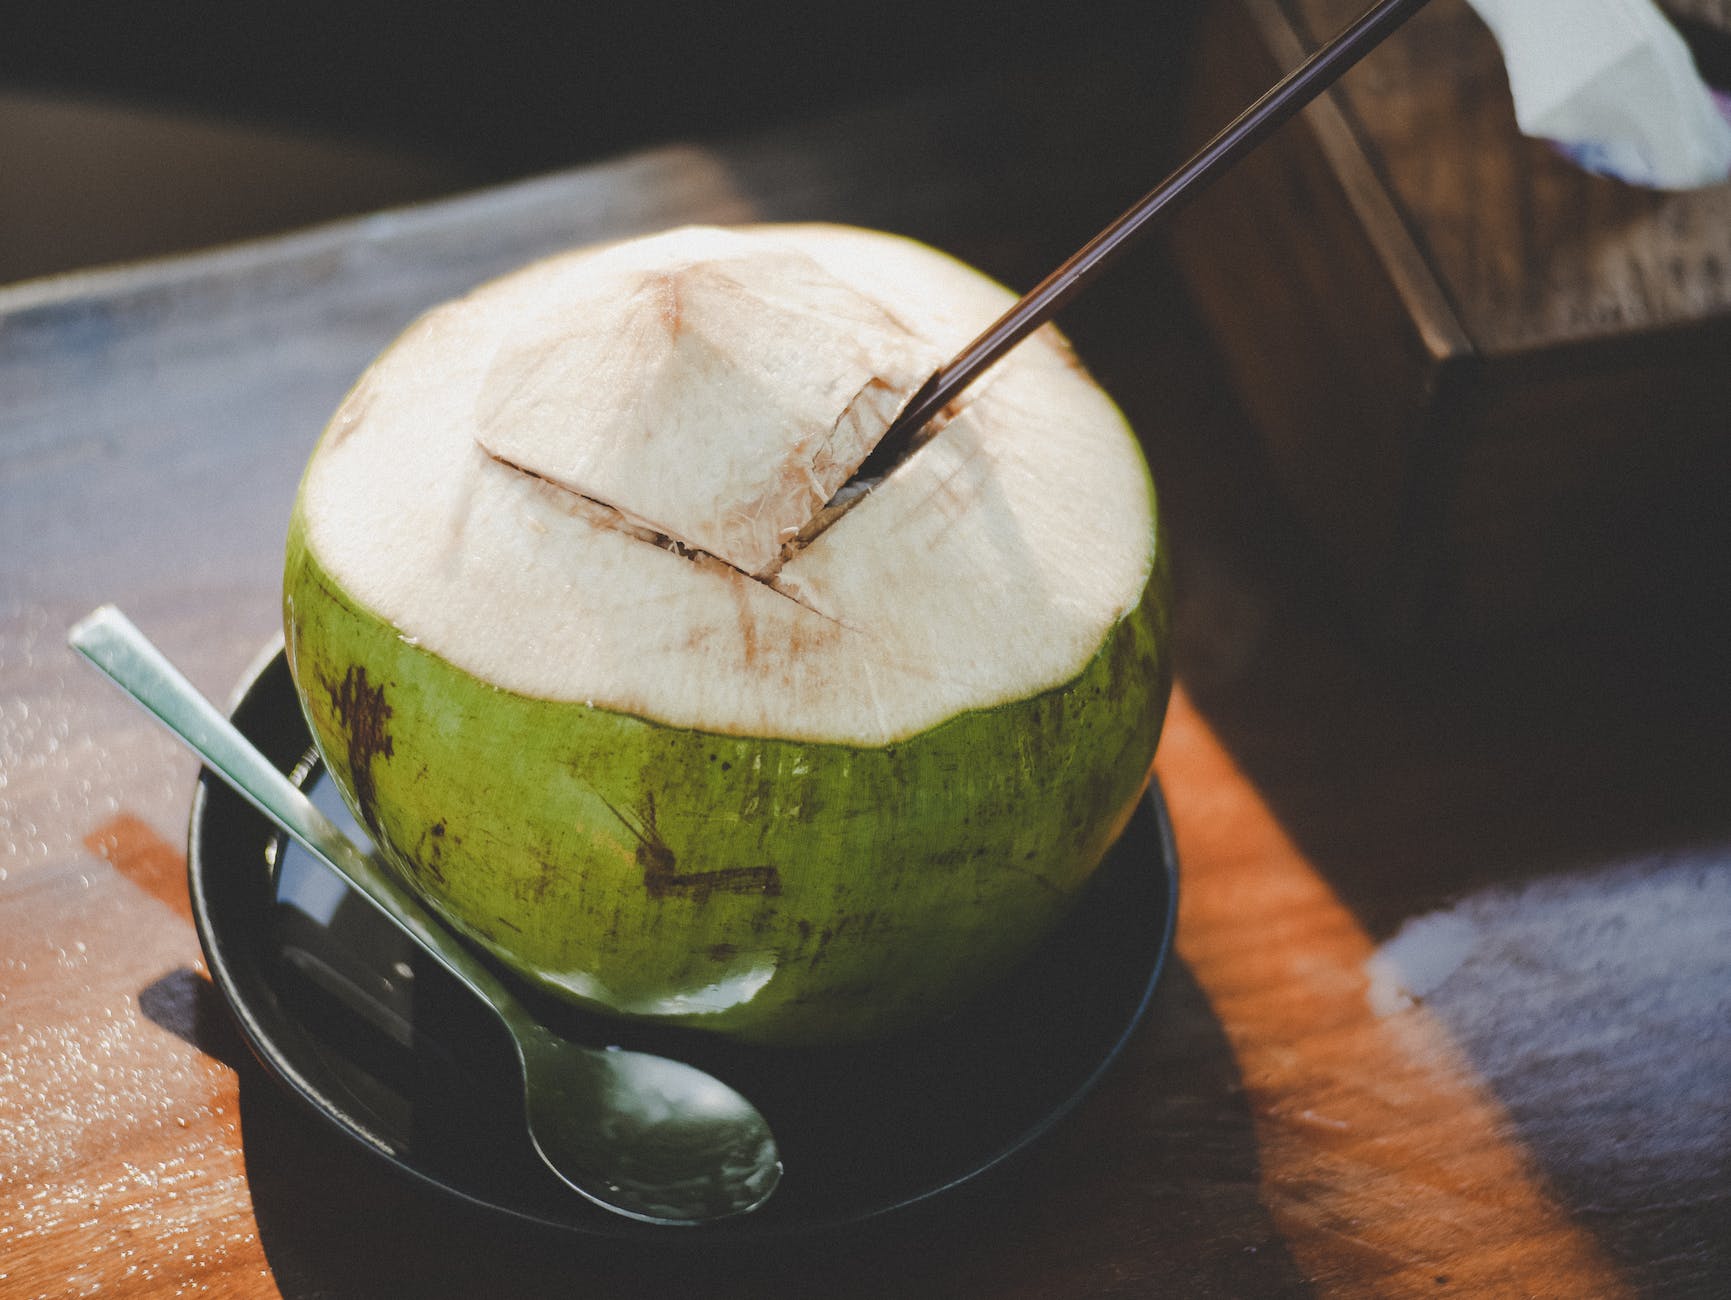 नारियल पानी की तासीर ठंडी या गरम कैसी होती है ? – Coconut Water Taseer